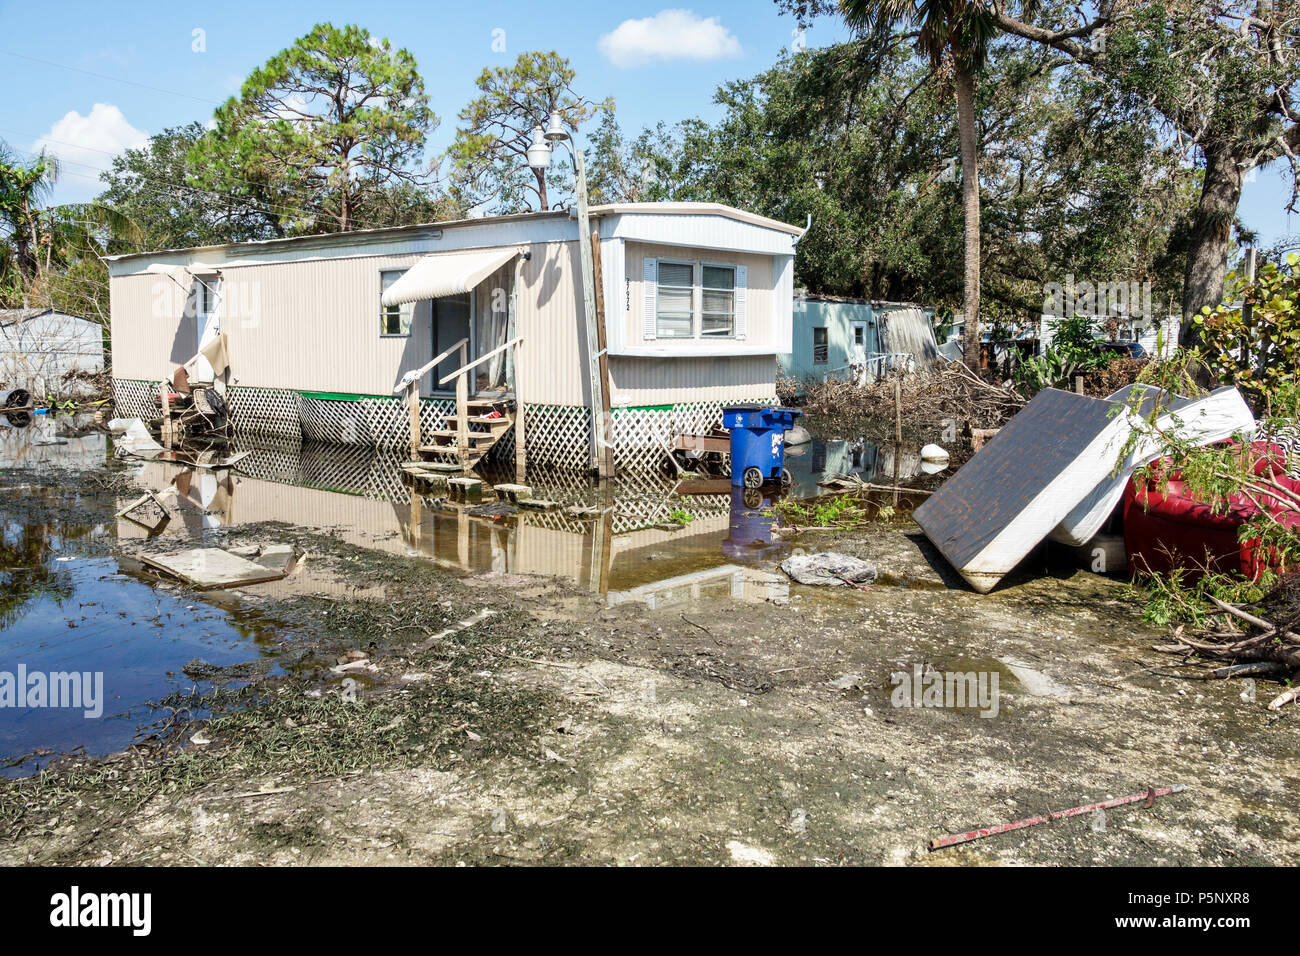 Florida, Bonita Springs, nach dem Hurrikan Irma Sturm Regen Schäden Zerstörung Nachwirkungen, Überschwemmungen, Mobilpark Wohnwagen nach Hause, Trümmer, Müll, stagnierendes Wasser, FL17 Stockfoto